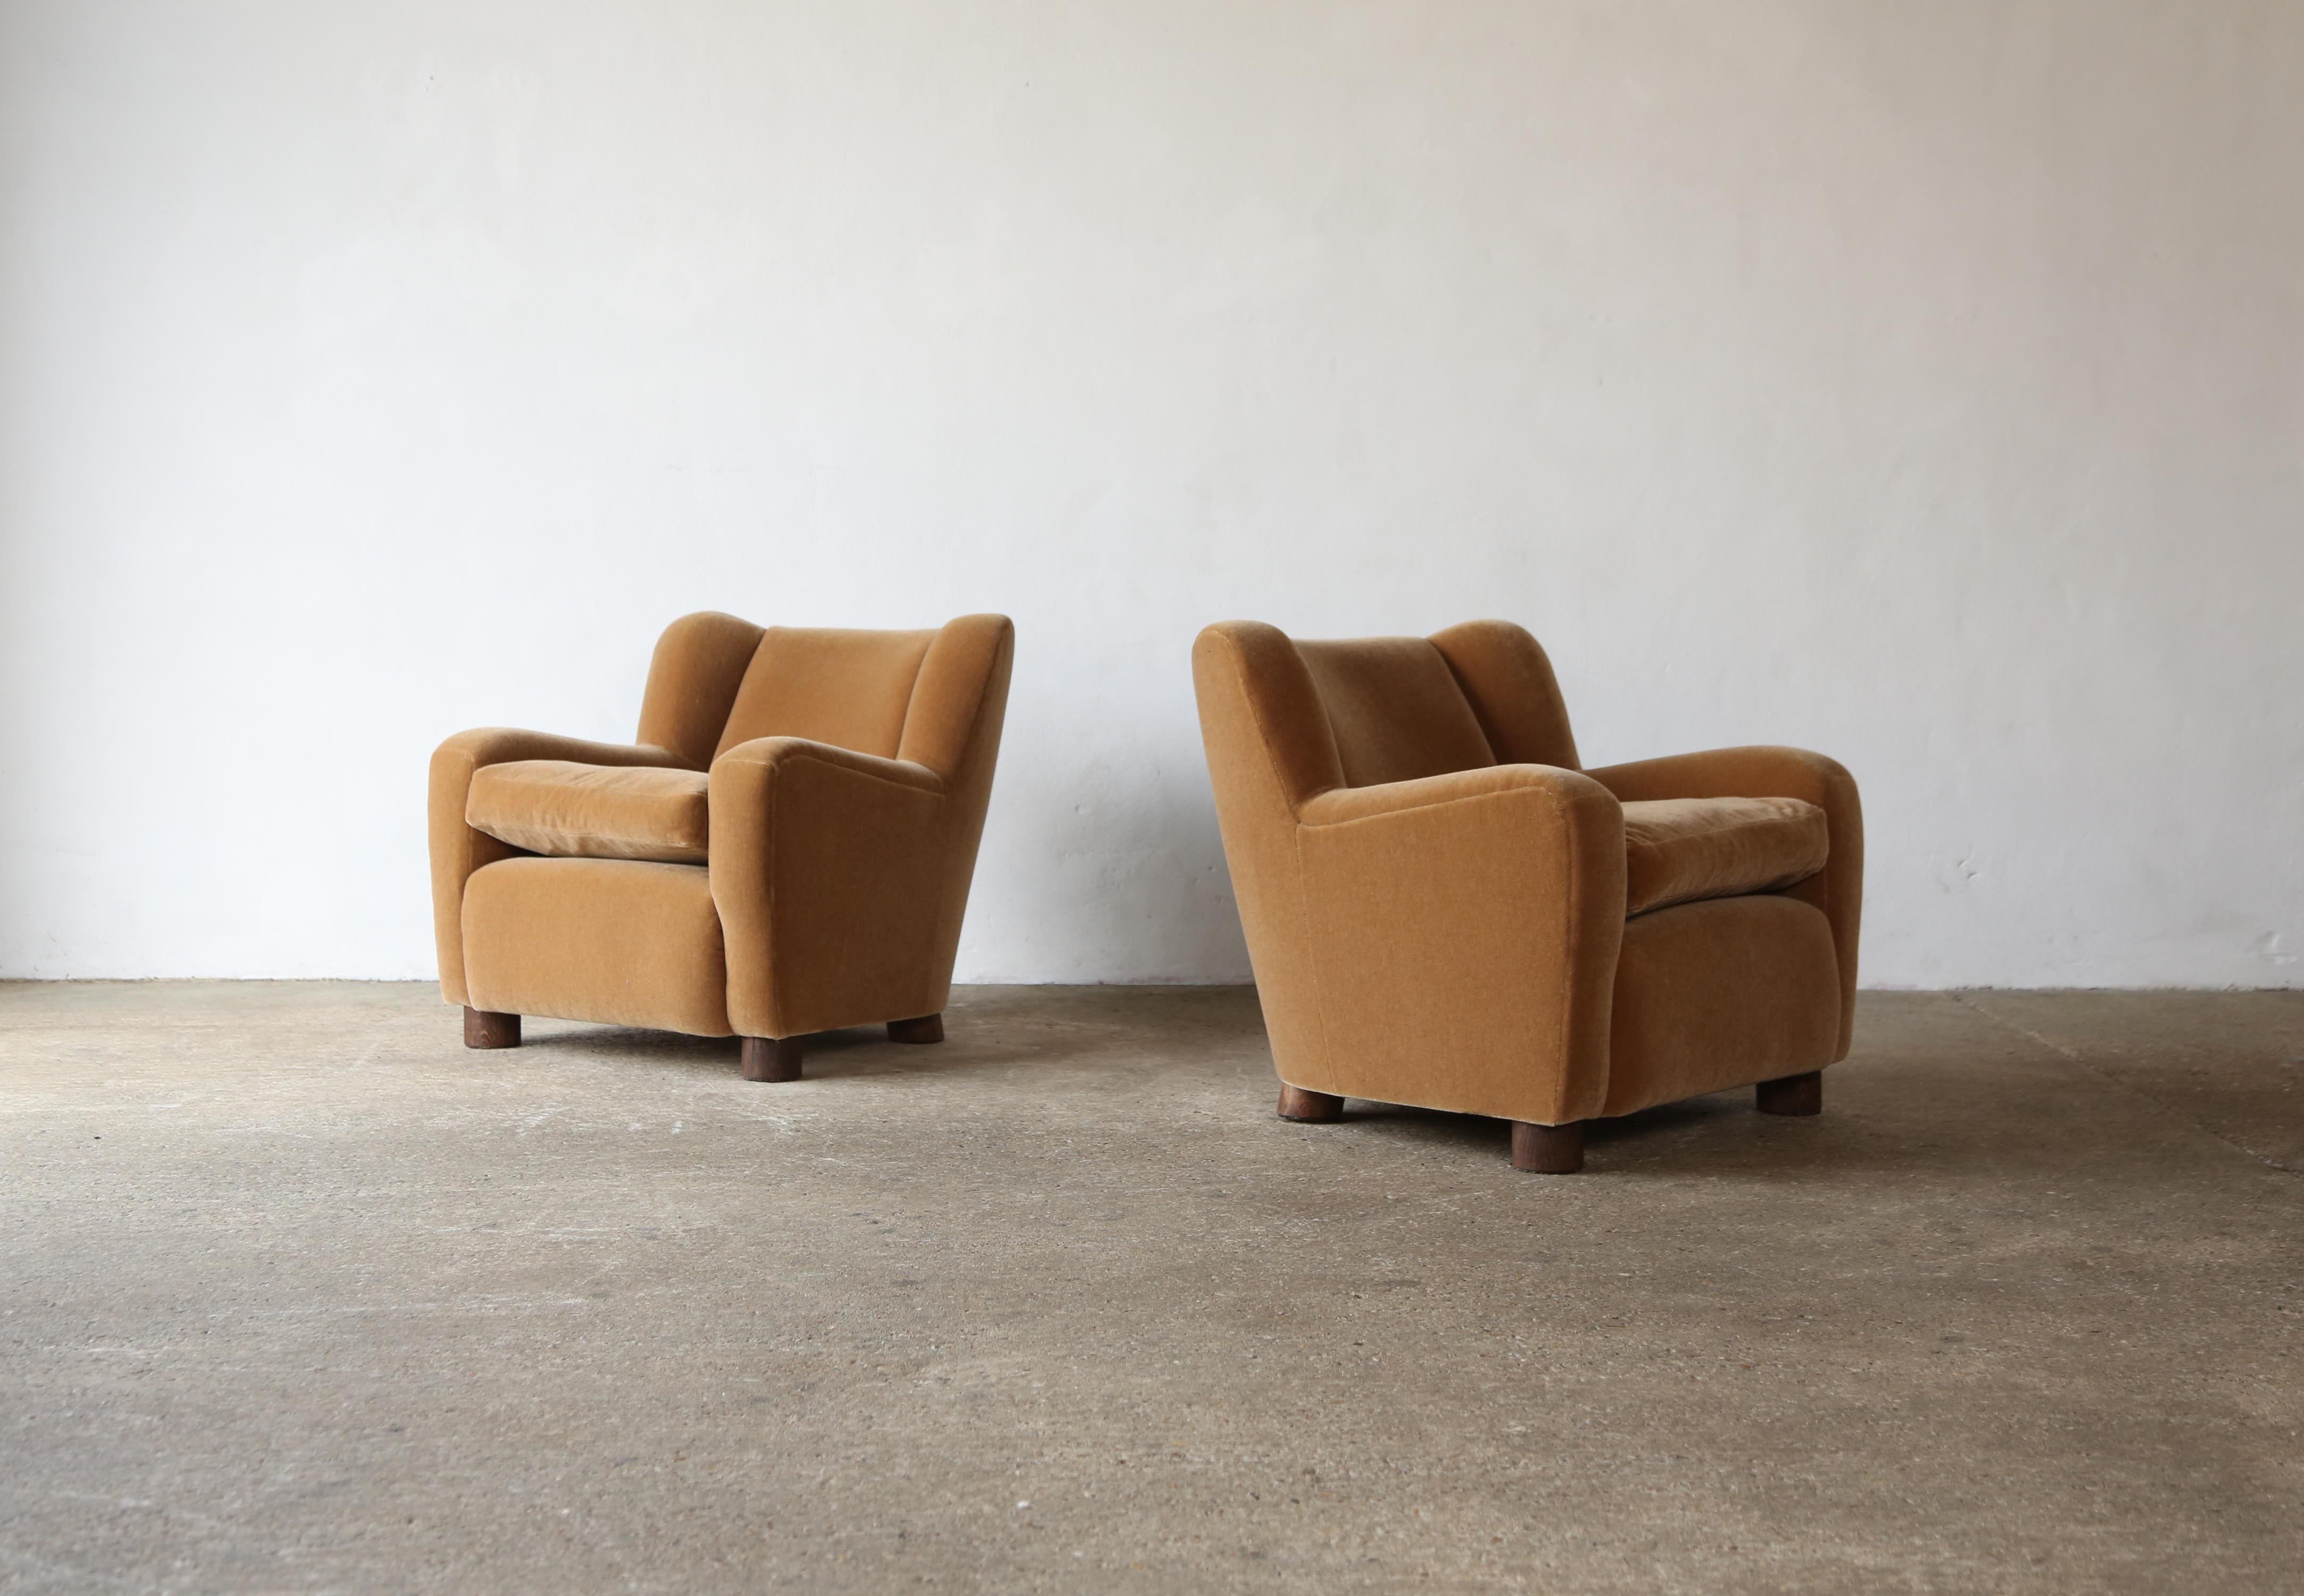 Ein tolles Paar moderne Sessel, in der Art von Guglielmo Ulrich, neu gepolstert in einem Rost / Burnt Orange reinen Mohair Stoff.   Hochwertiger, handgefertigter Buchenrahmen, traditioneller, handgefederter Sitz, loses Kissen aus Federn/Fasern und